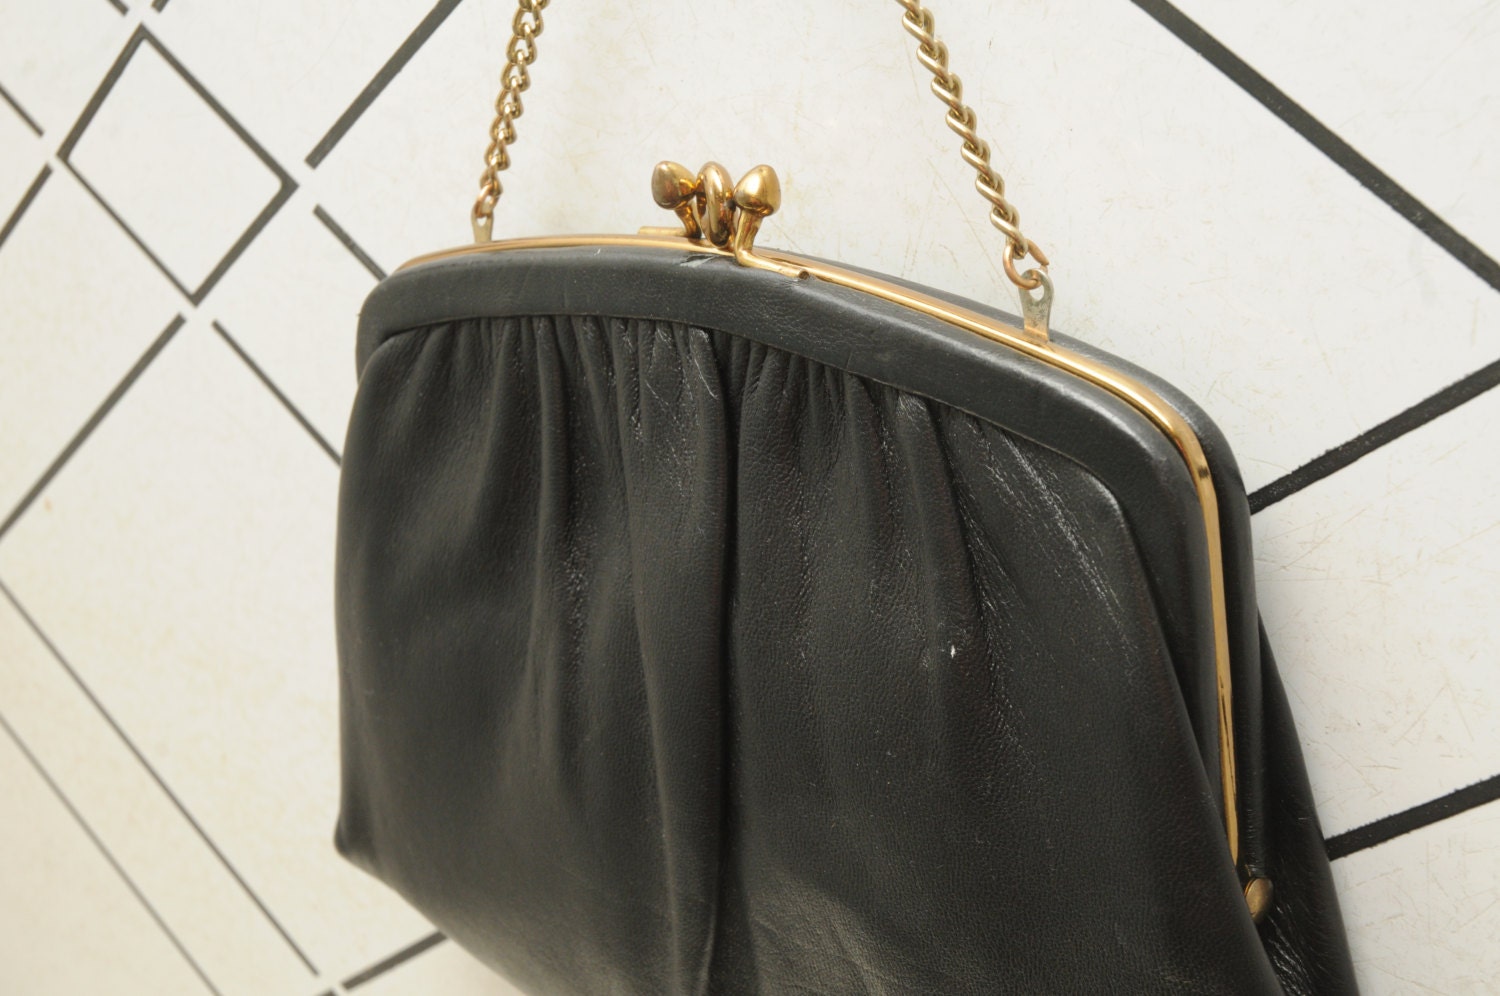 Vintage Black Ande Purse With Gold Small Handbag 